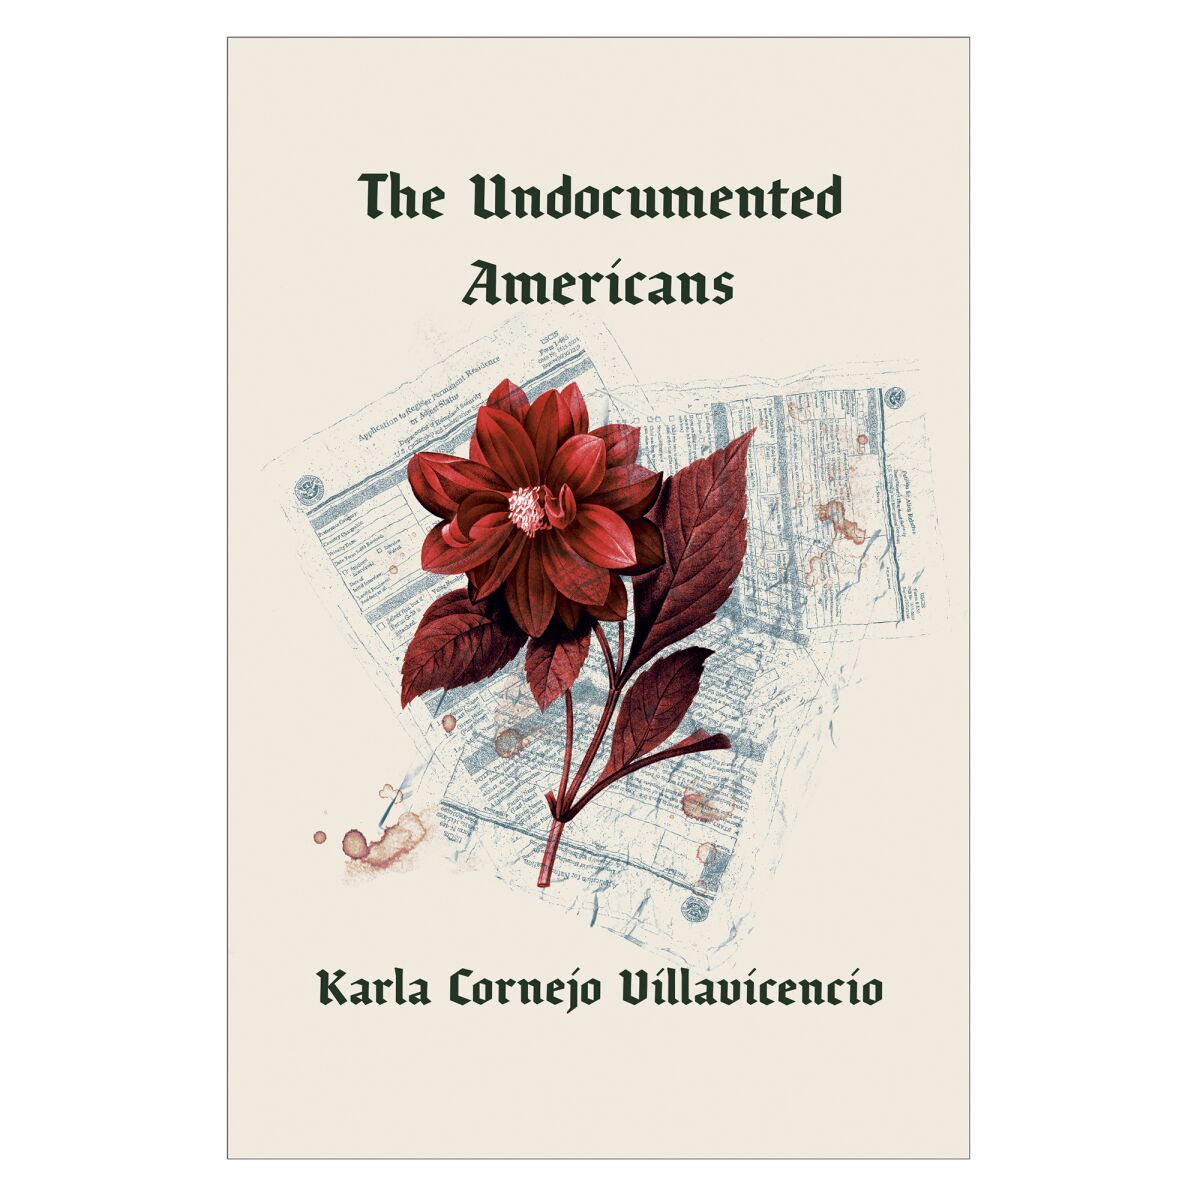 Undocumented Americans by Karla Cornejo Villavicencio